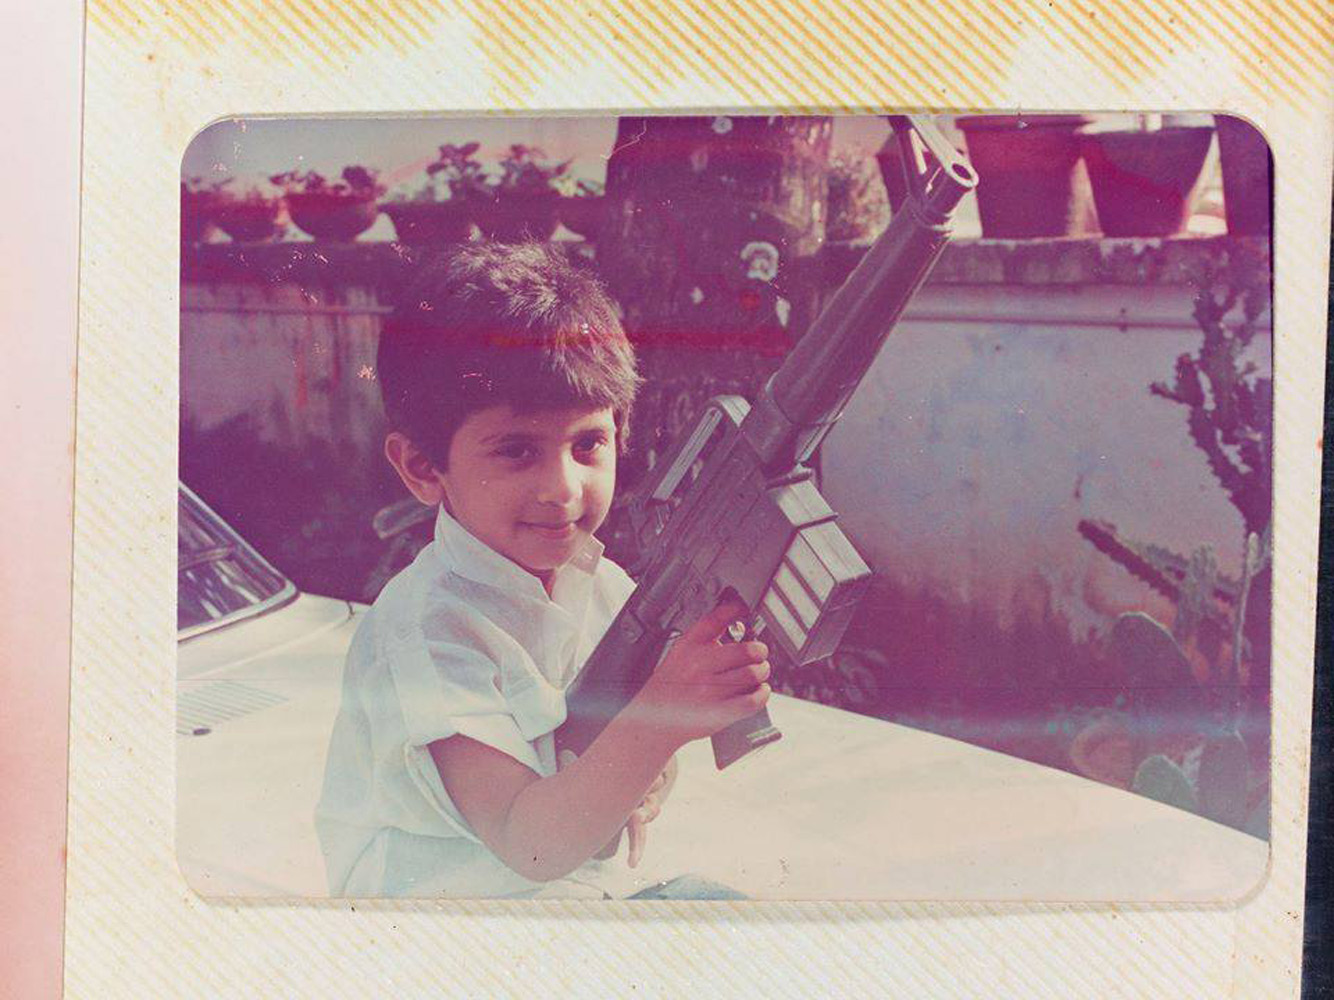 https://onlookersmedia.in/wp-content/uploads/2015/07/Dulquer-Salmaan-childhood-stills-3.jpg